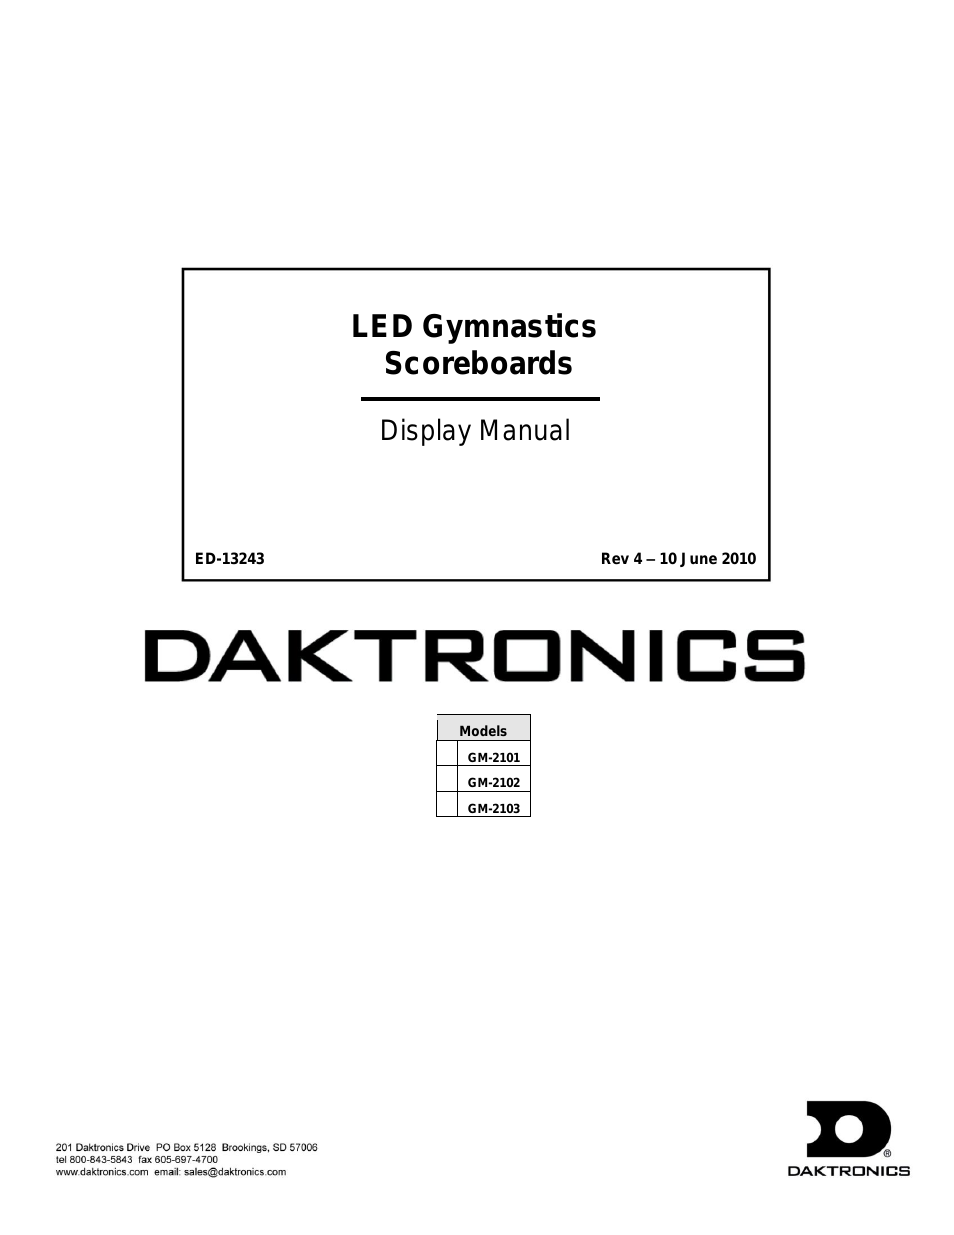 GM-2102 LED Gymnastics Scoreboards